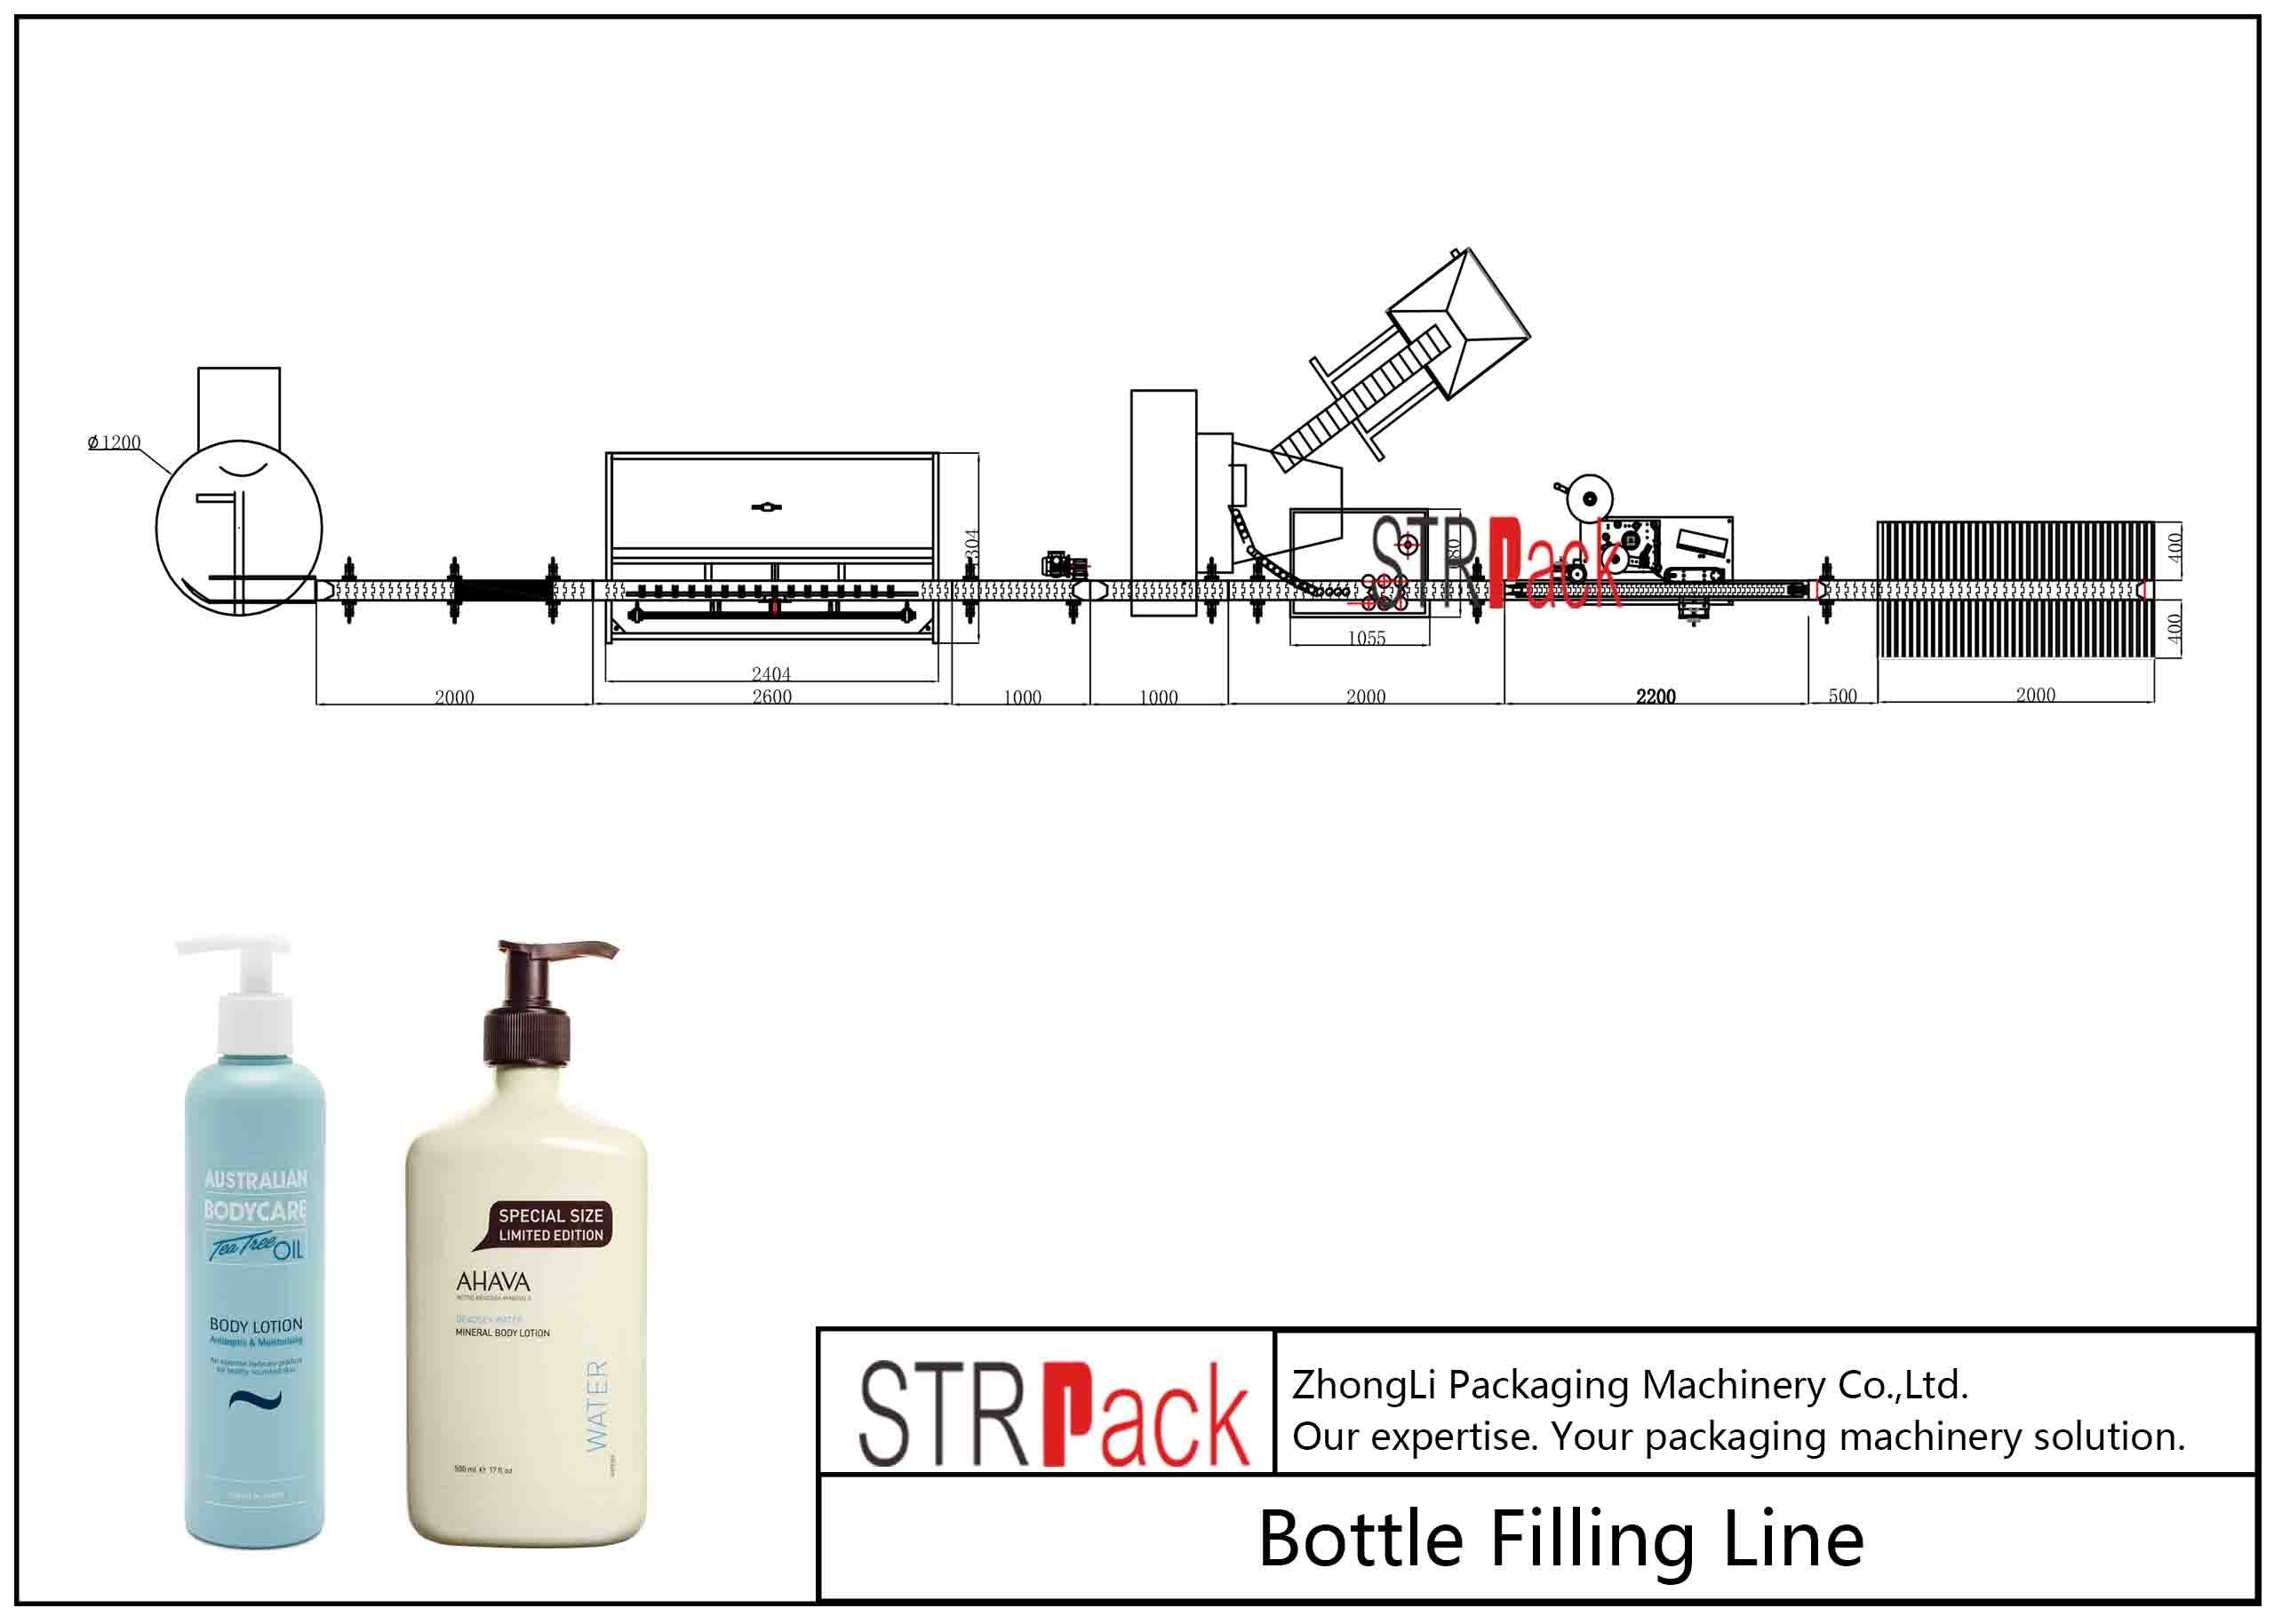 خط تعبئة زجاجة معجون كريم حشو مع 10 فوهات آلة تعبئة المكبس الحجمي